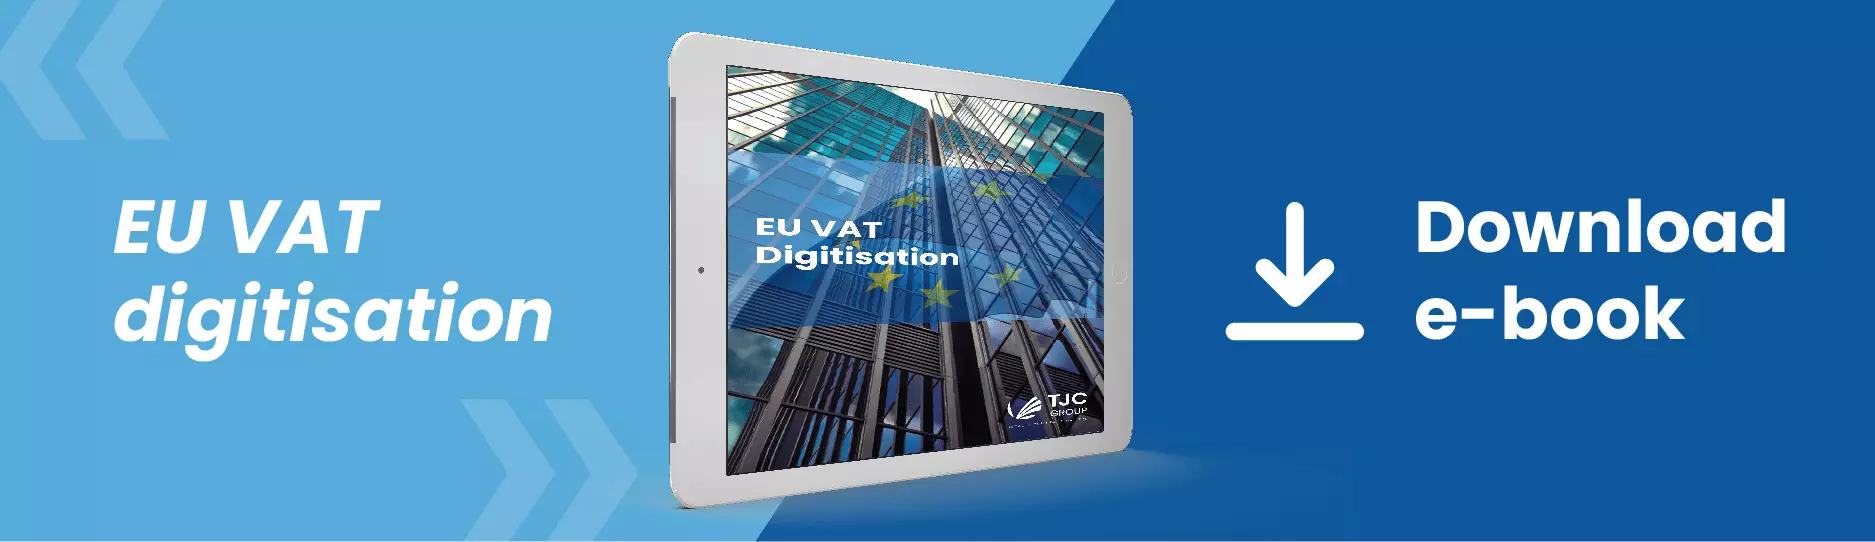 EU-Mehrwertsteuer E-Book-Download | TJC-Gruppe